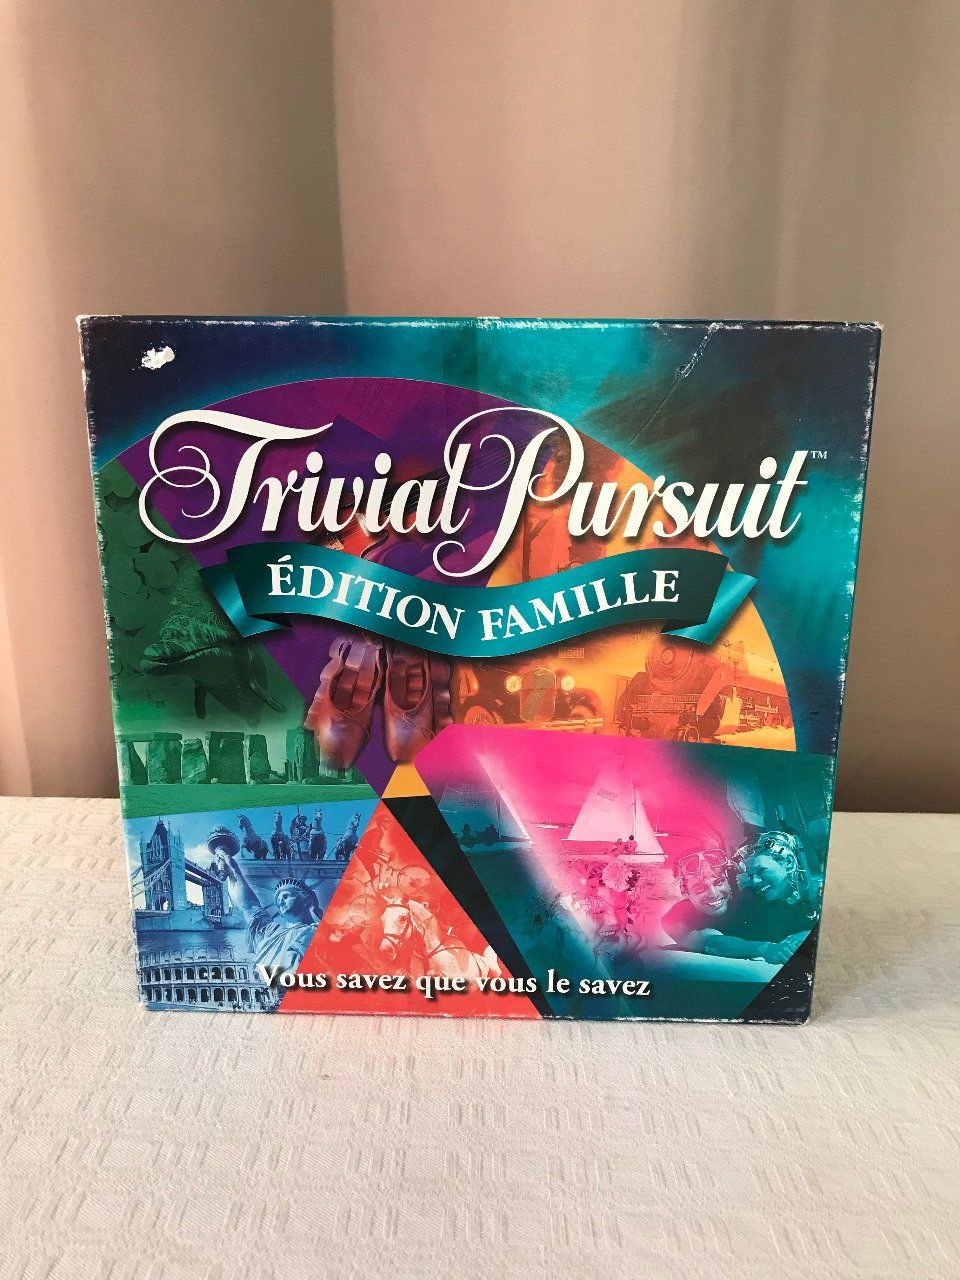 Trivial Pursuit, édition famille, Jeu de société Parker, édition 1999 -  Videgrenierdunet